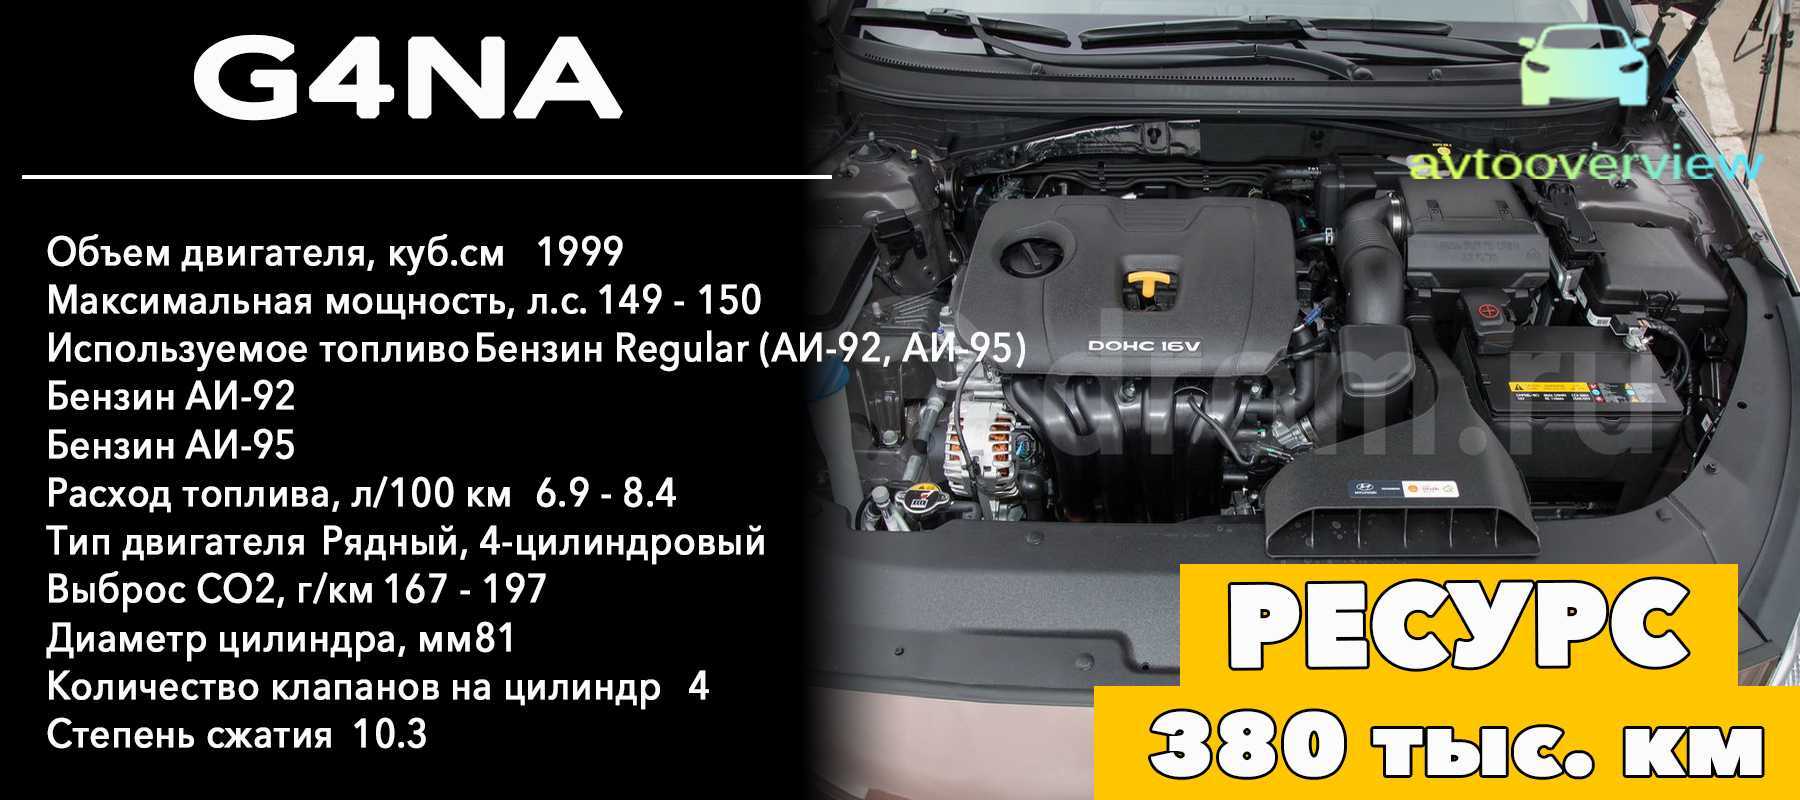 Как продлить ресурс двигателя g4na 2.0 150/155 л.с (киа спортейдж/хендай туссан) и не нарваться на задиры?